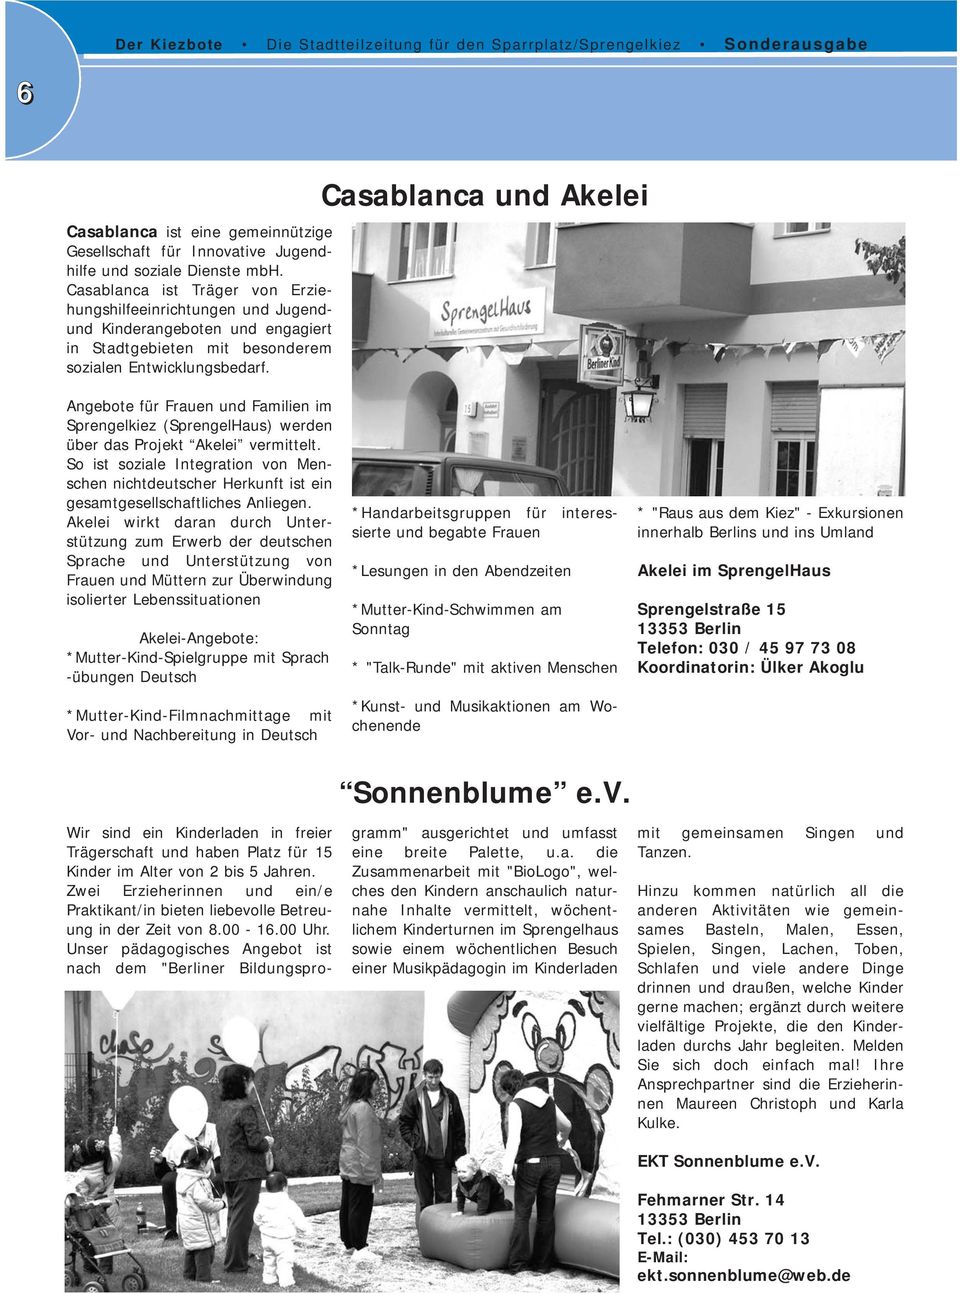 Casablanca und Akelei Angebote für Frauen und Familien im Sprengelkiez (SprengelHaus) werden über das Projekt Akelei vermittelt.